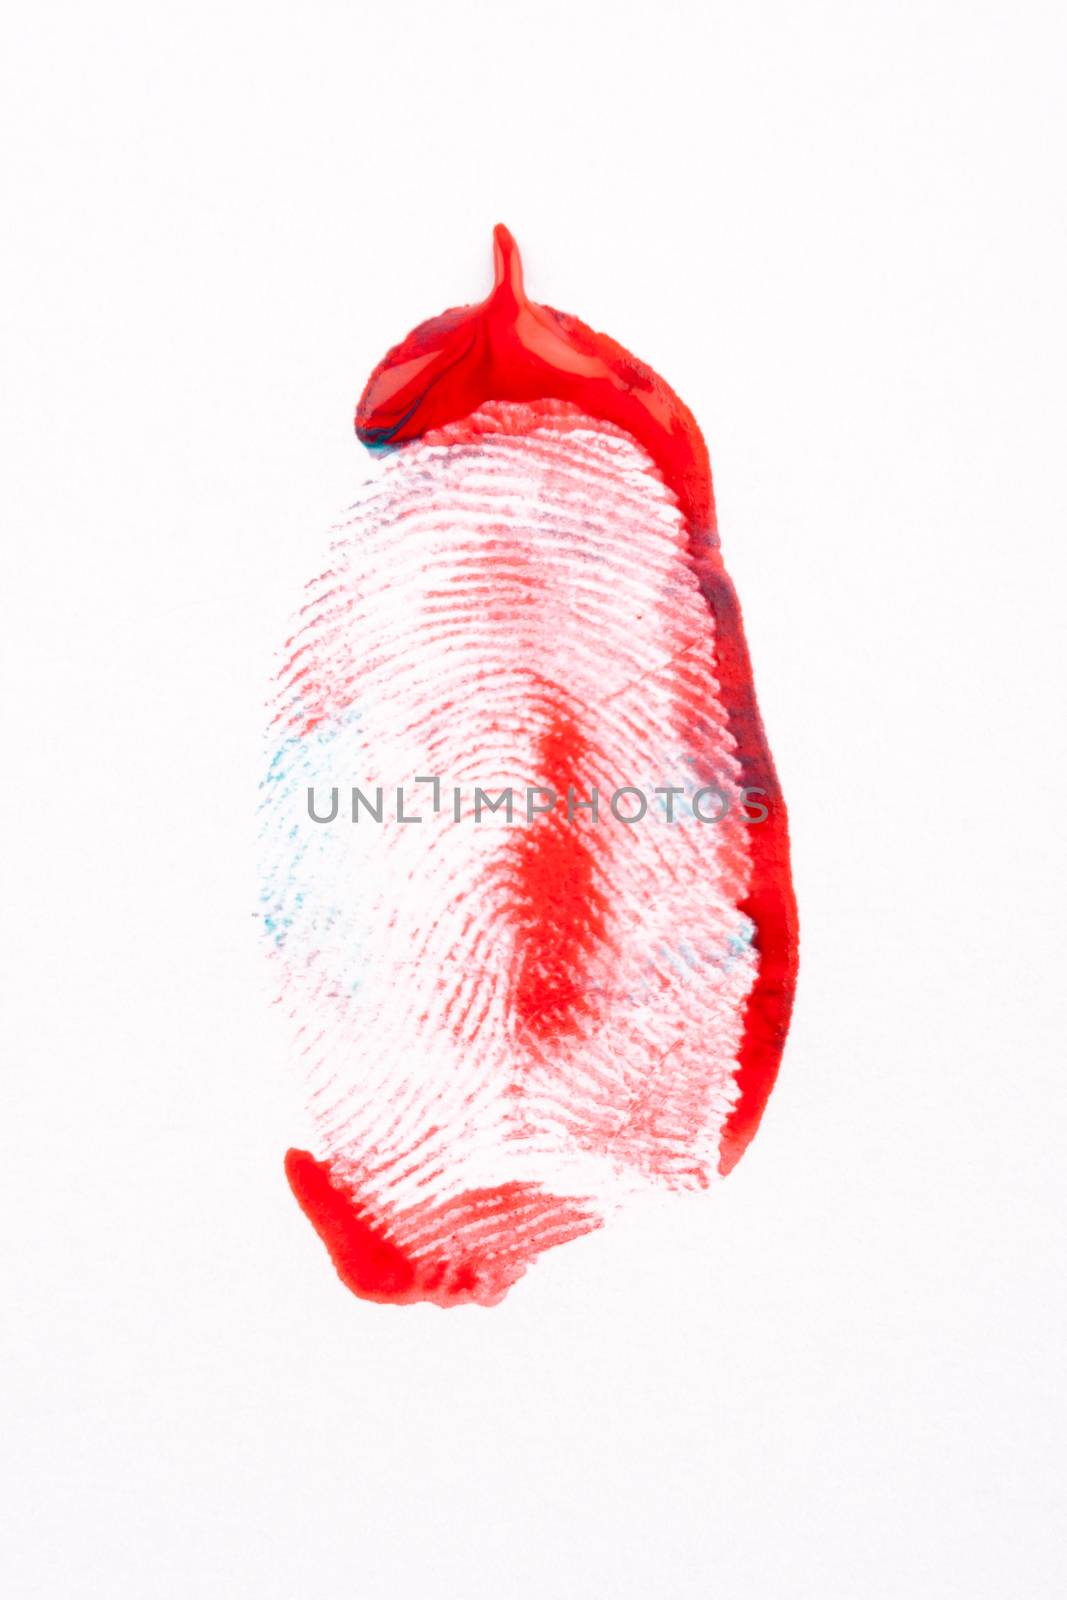 red oil paint fingerprint on white paper